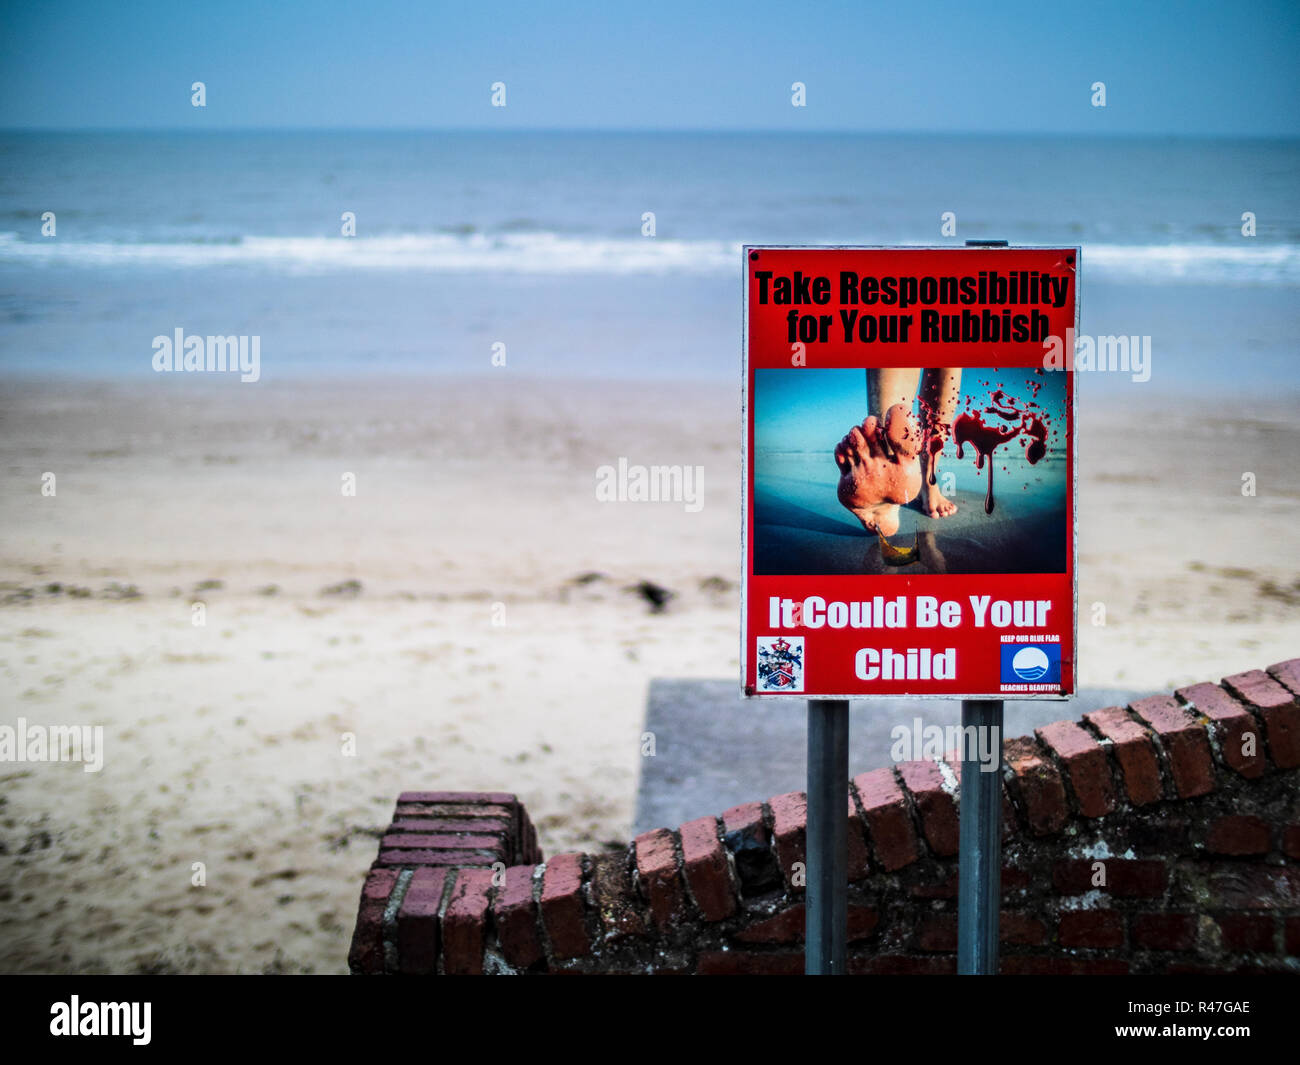 Déchets de plage / plage de la litière - affiche sur les dangers des déchets laissés sur les plages Banque D'Images